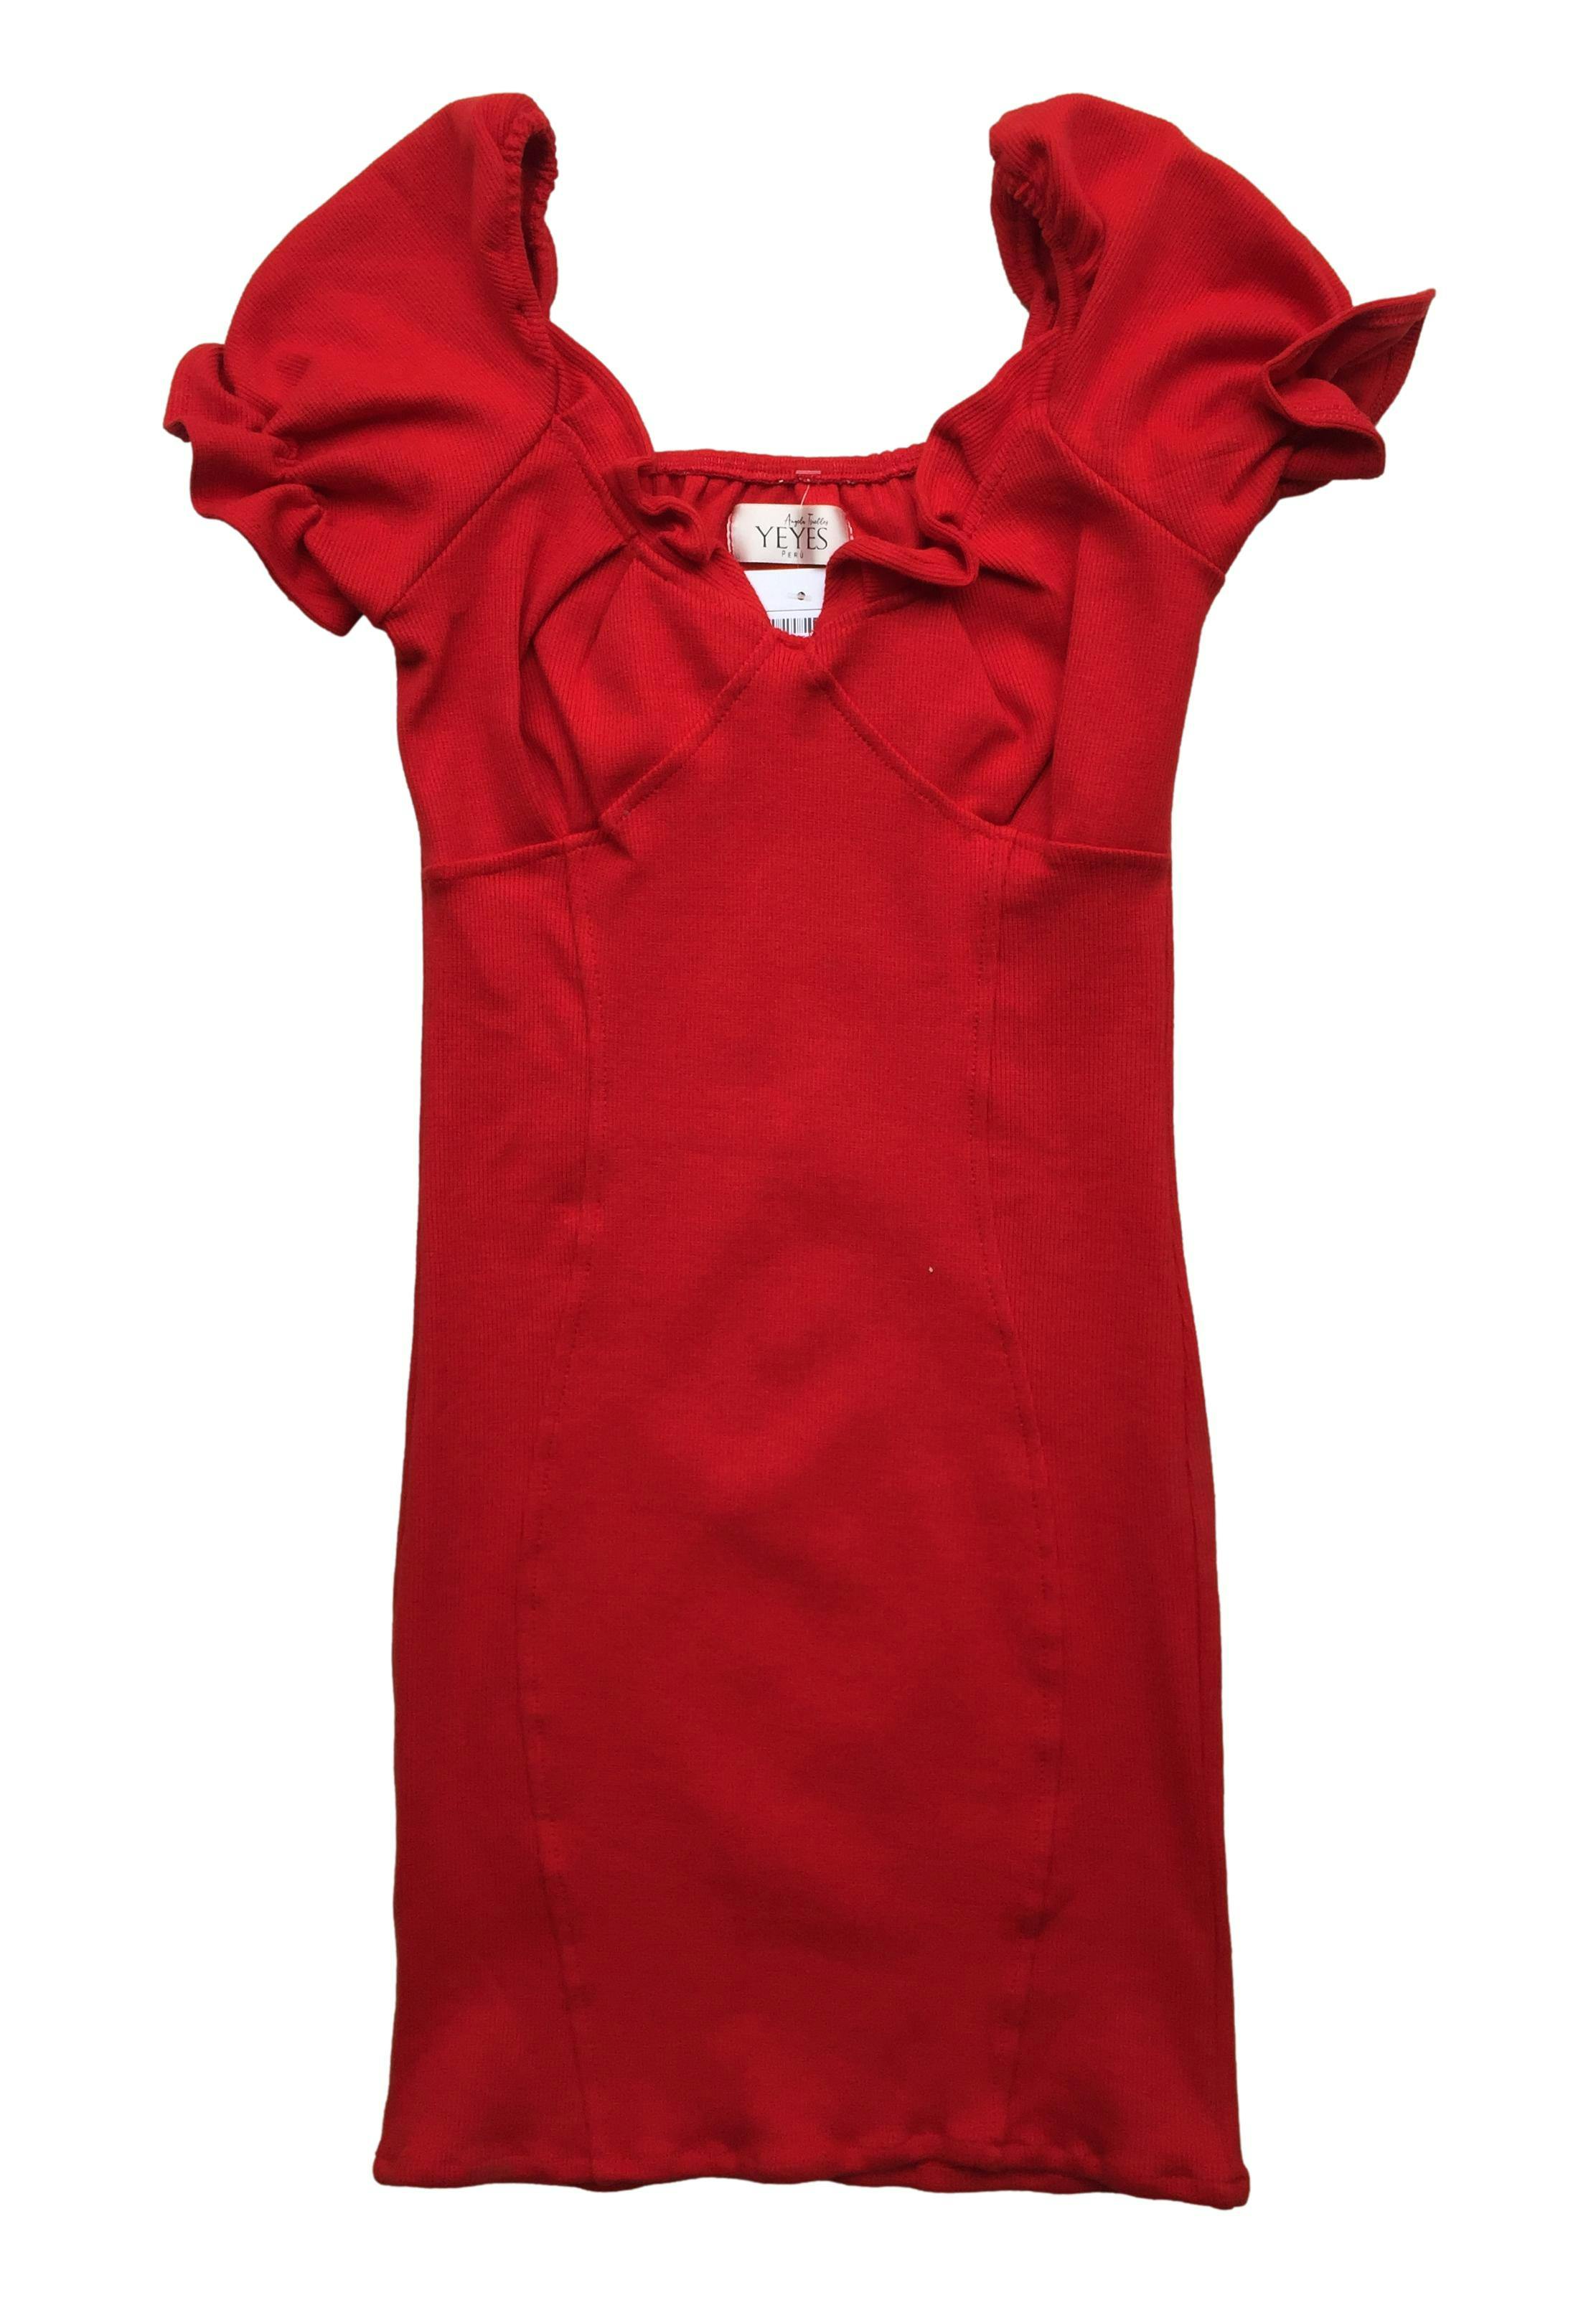 Vestido rojo acanalado mangas con vuelo y elástico, stretch. Busto: 66cm, Largo: 76cm. Nuevo con etiqueta